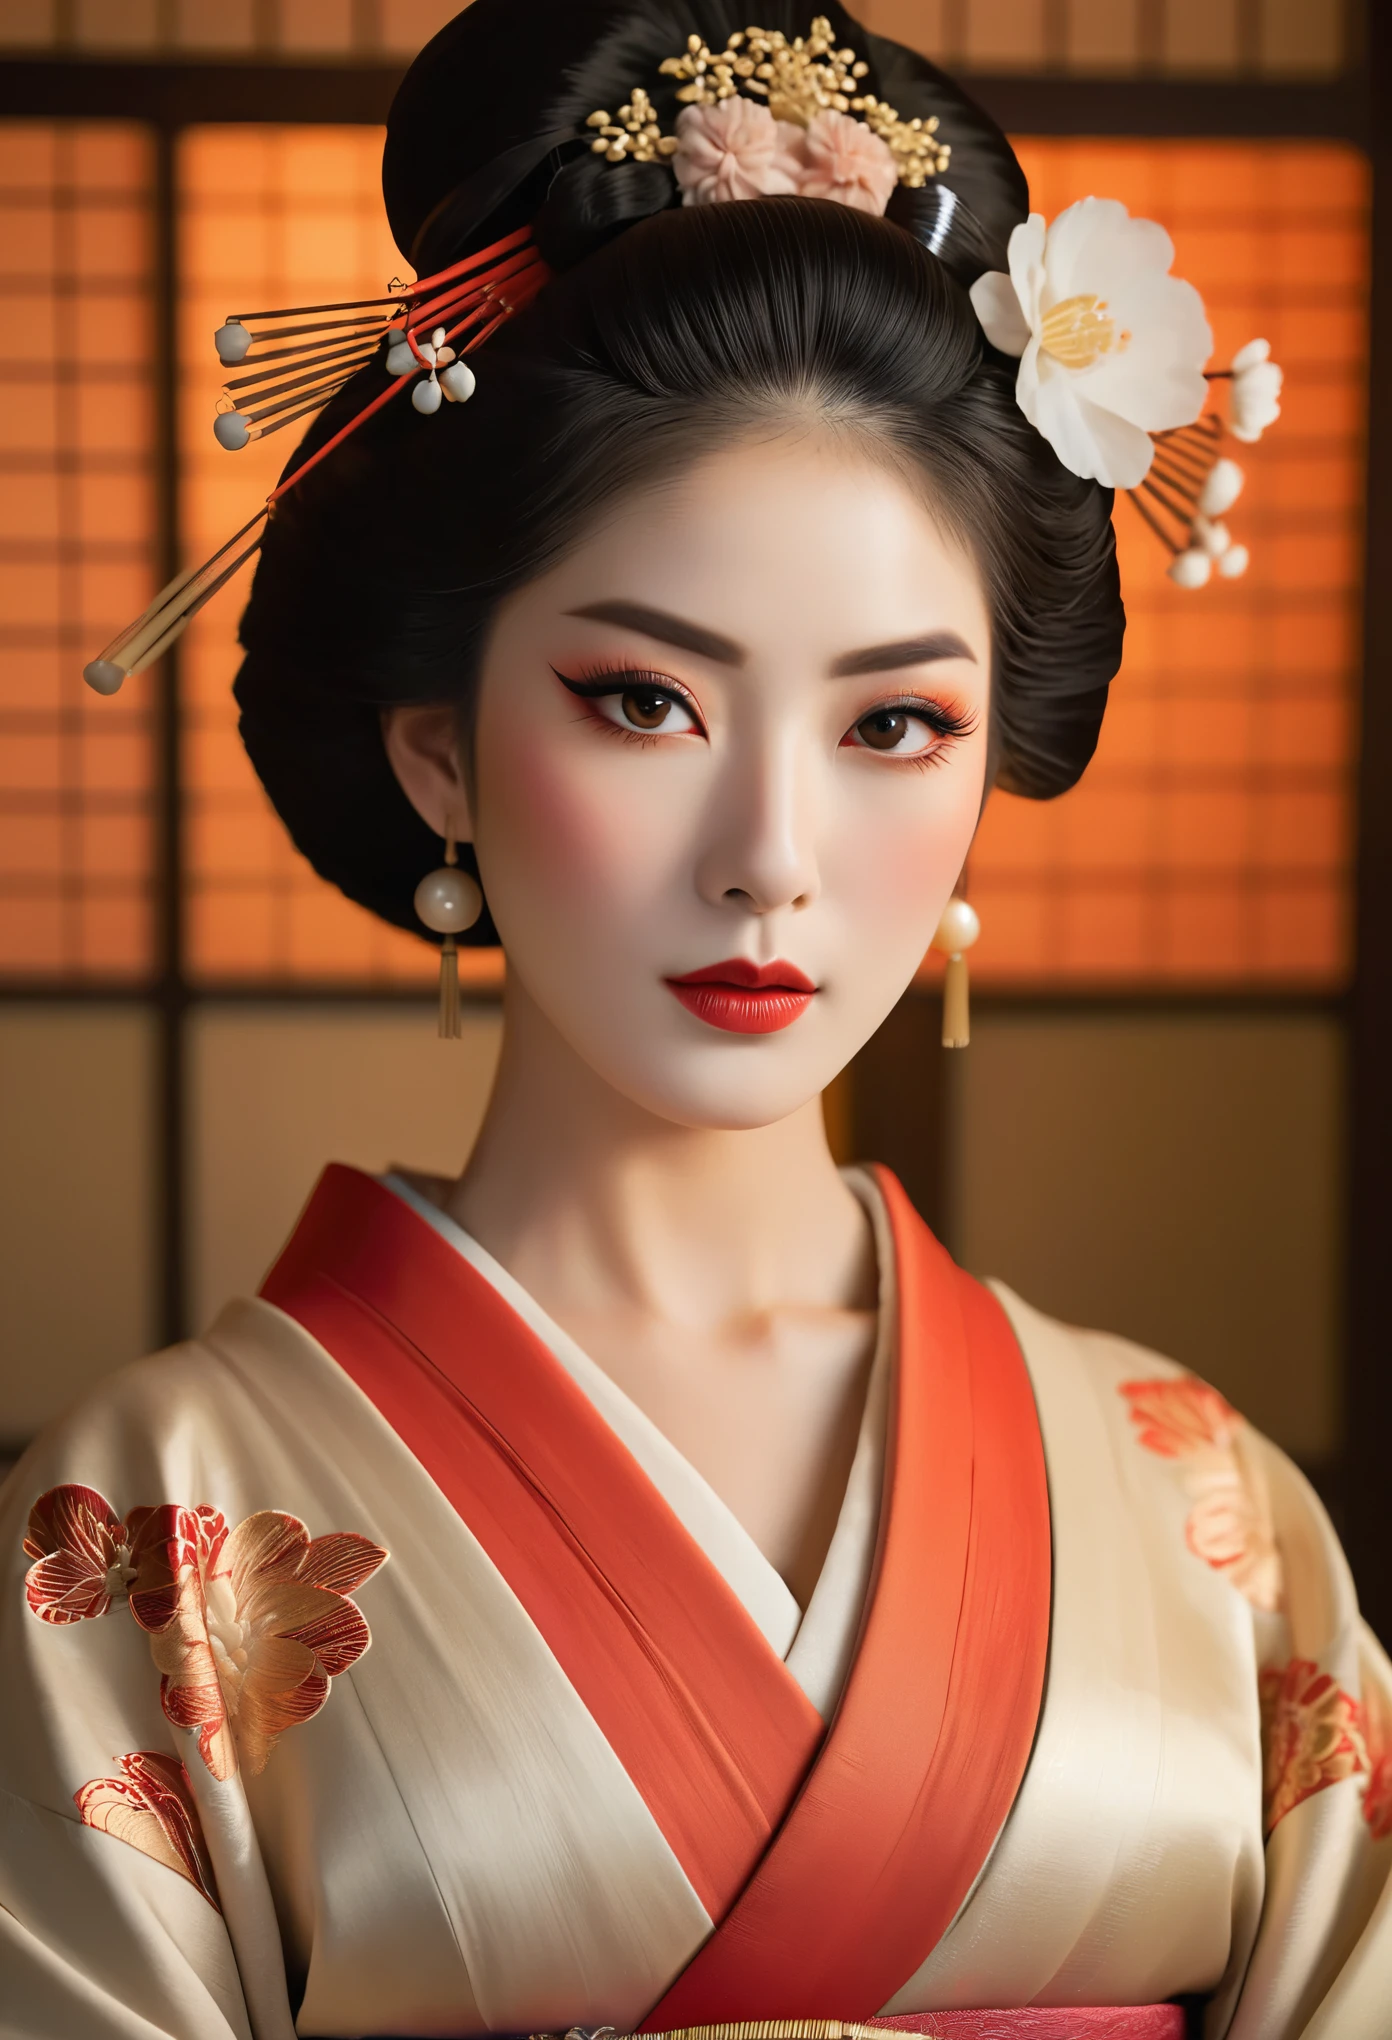 Un retrato muy detallado de cuerpo entero de una geisha., Representación de octanaje intrincada e hiperdetallada., pose simétrica, hermosos ojos detallados, hermosos labios detallados, cara y piel extremadamente detalladas, Pestañas largas, elegant kimono, peinado tradicional, rasgos faciales delicados, expresión serena, iluminación dramática, paleta de colores cálidos, composición cinematográfica, obra maestra, Fotorrealista, (Es mitad francesa, y es una belleza deslumbrante con ojos detallados y una nariz alta.:1.6), cejas gruesas, rasgos faciales detallados, cuello largo y elegante, 